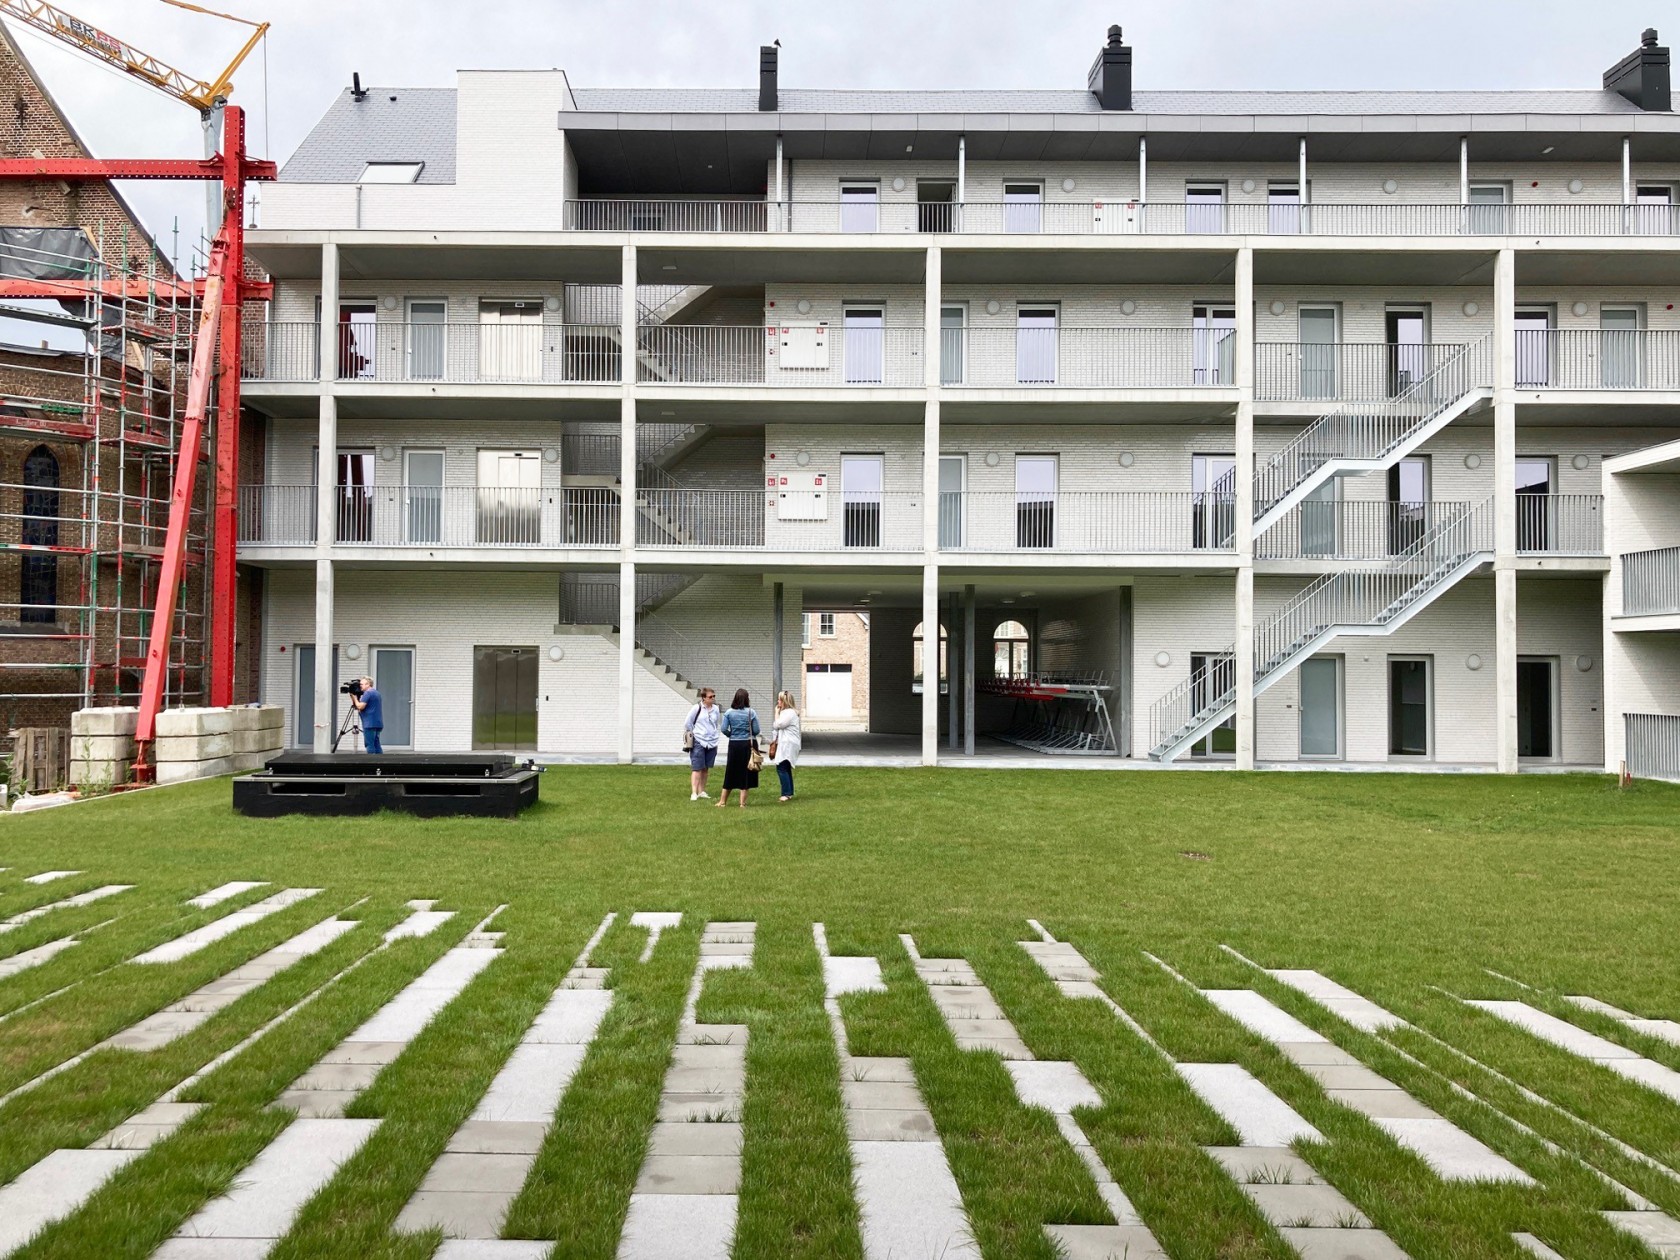 Abscis Architecten - binnentuin met gaanderijen die doen denken aan kloostergang